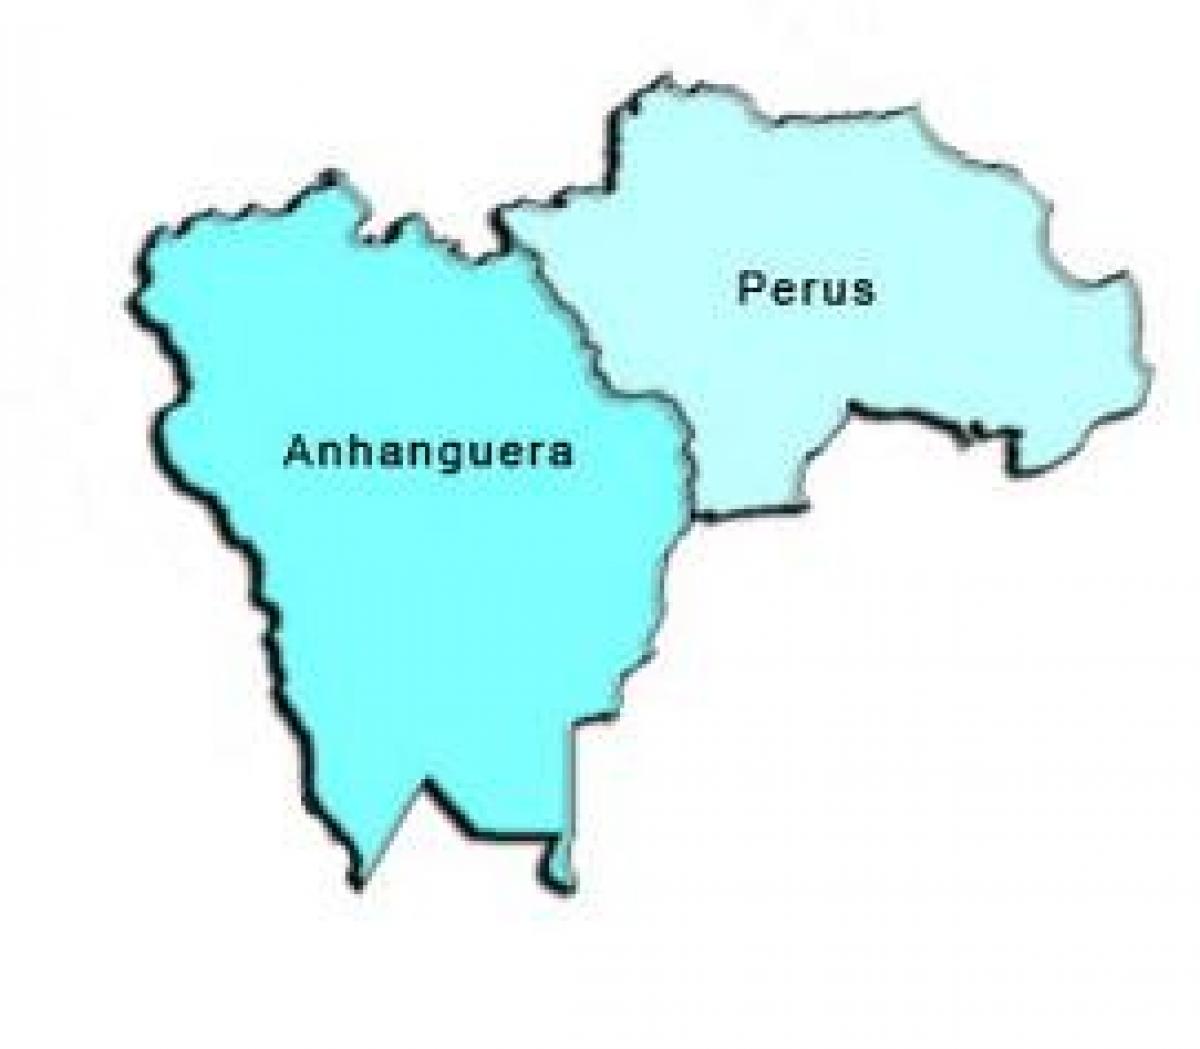 Kart супрефектур Перус